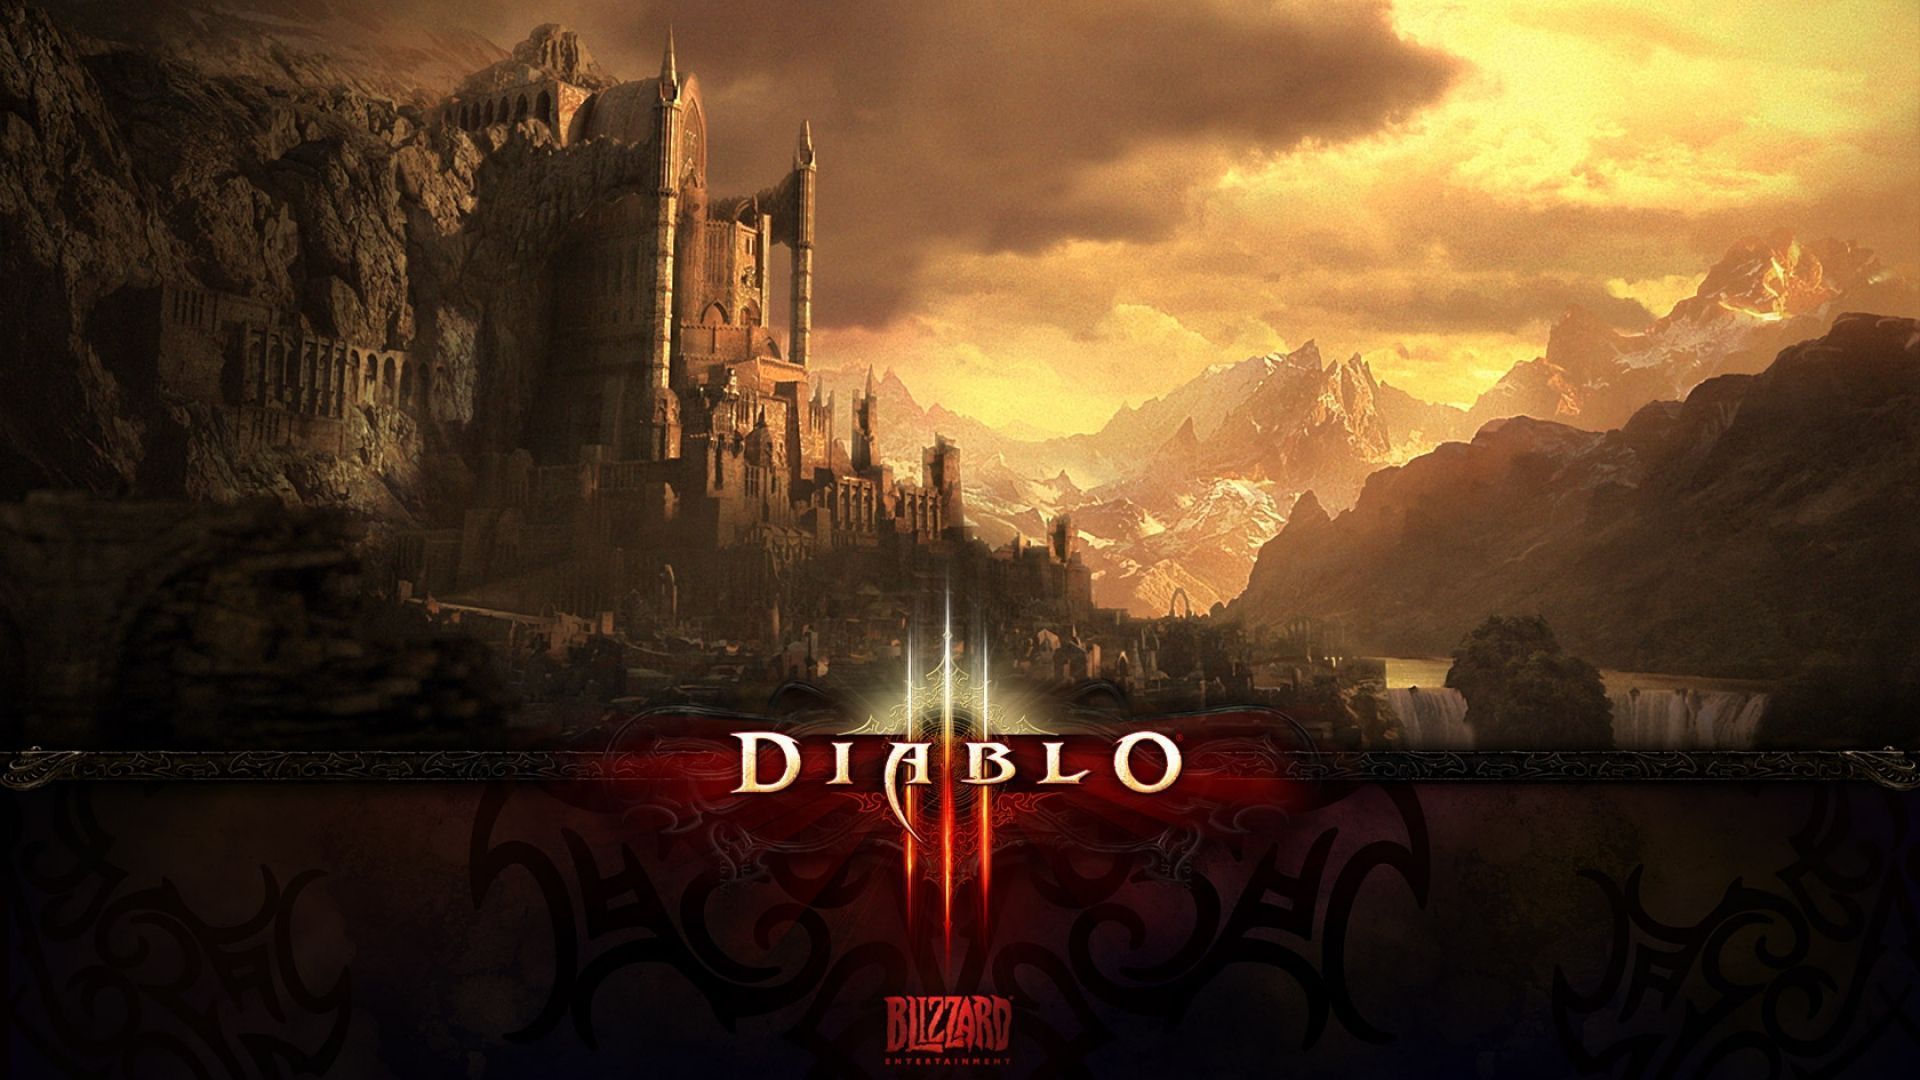 Full HD 1080p Diablo 3 Wallpapers HD, Desktop Backgrounds 1920x1080